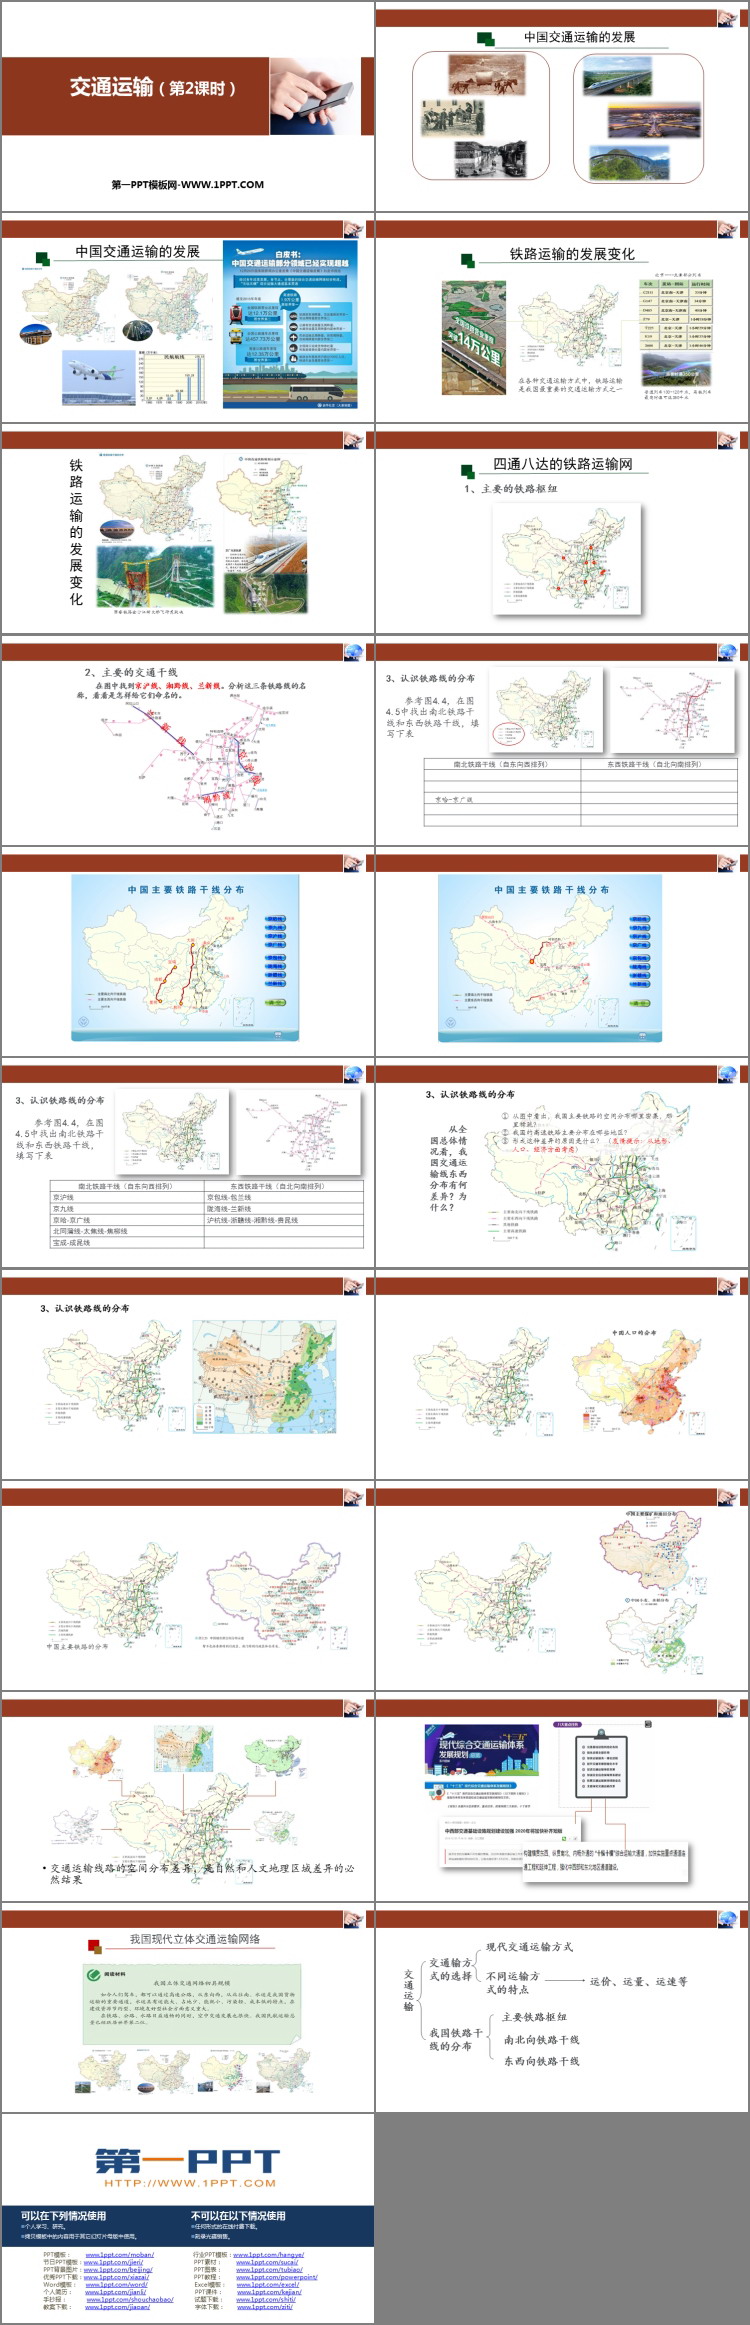 《交通运输》中国的经济发展PPT下载(第2课时)-预览图02